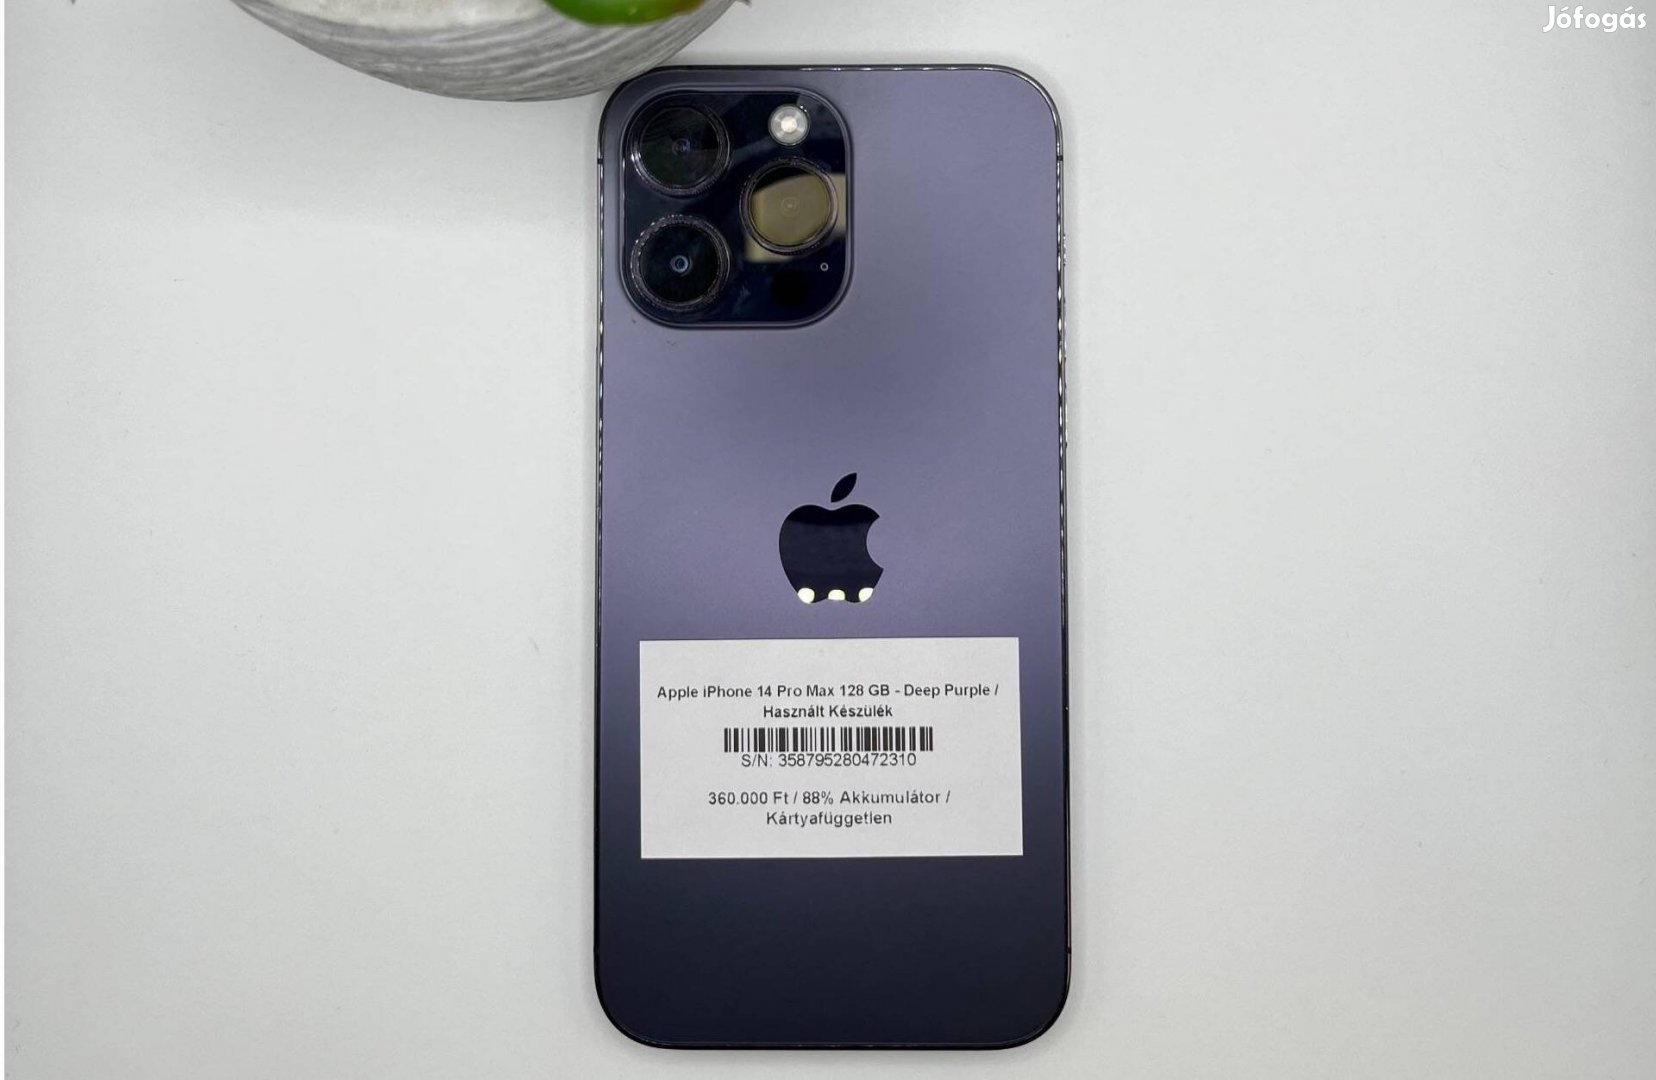 Apple iphone 14 Pro Max 128 GB - Kártyafüggetlen / Használt készülék